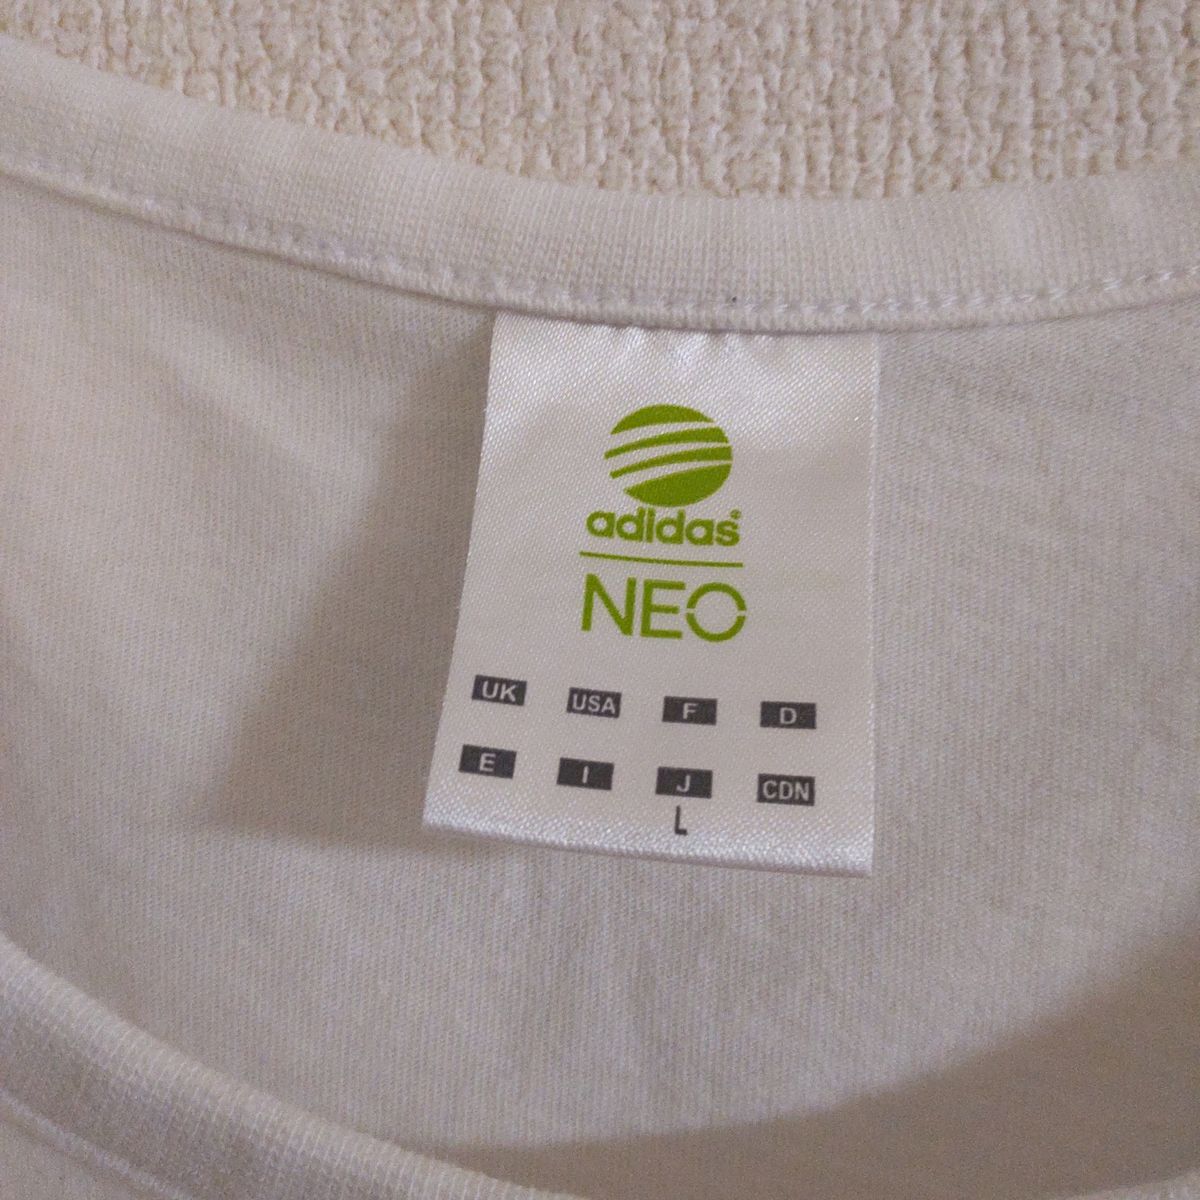 adidas NEO アディダス Tシャツ ホワイト 白 半袖  クルーネック L 綿100% スポーツ 運動 部活動 